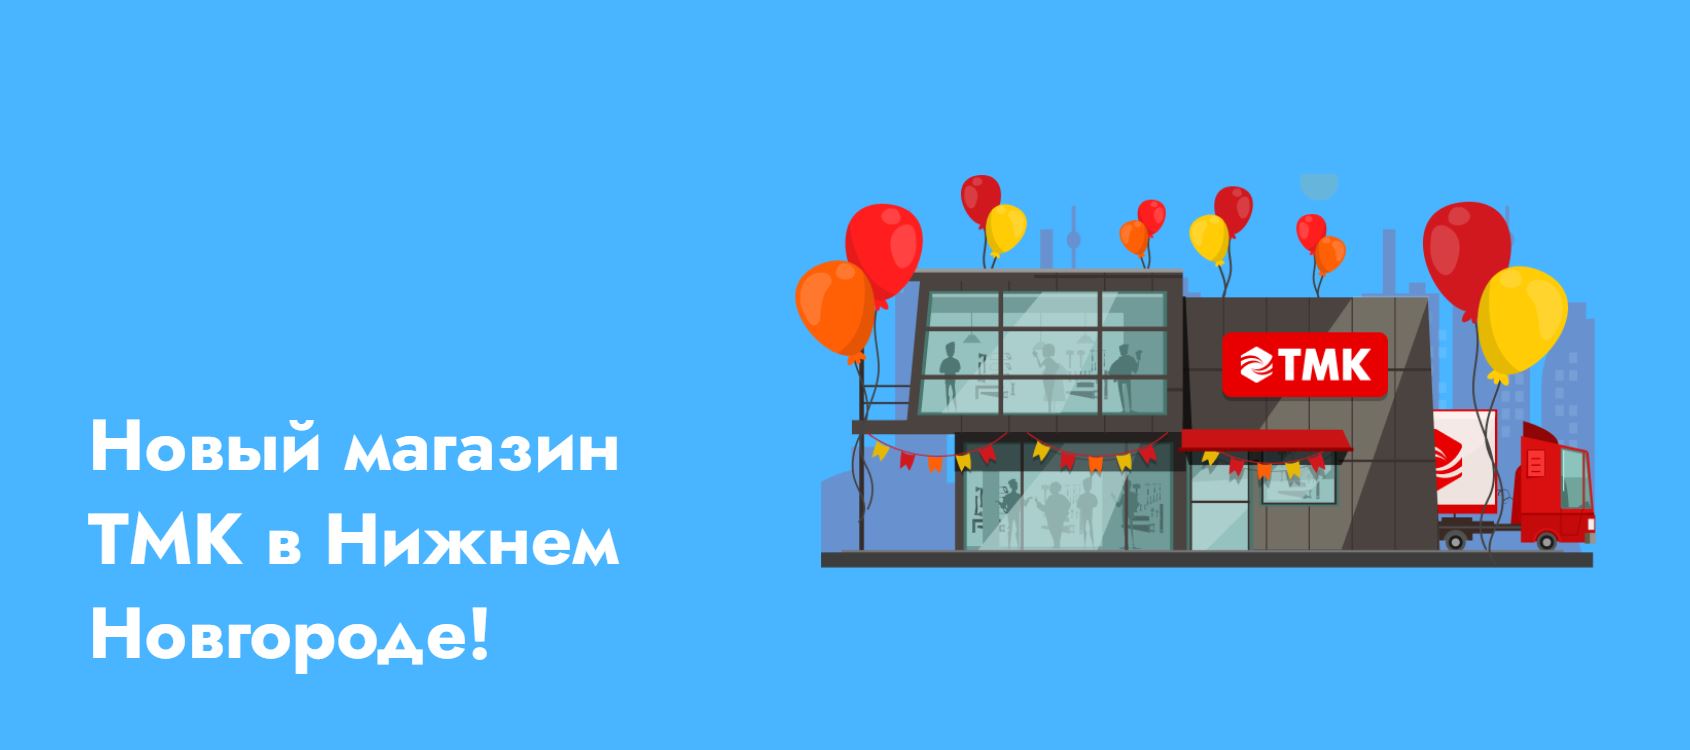 Открытие нового магазина в Нижнем Новгороде!